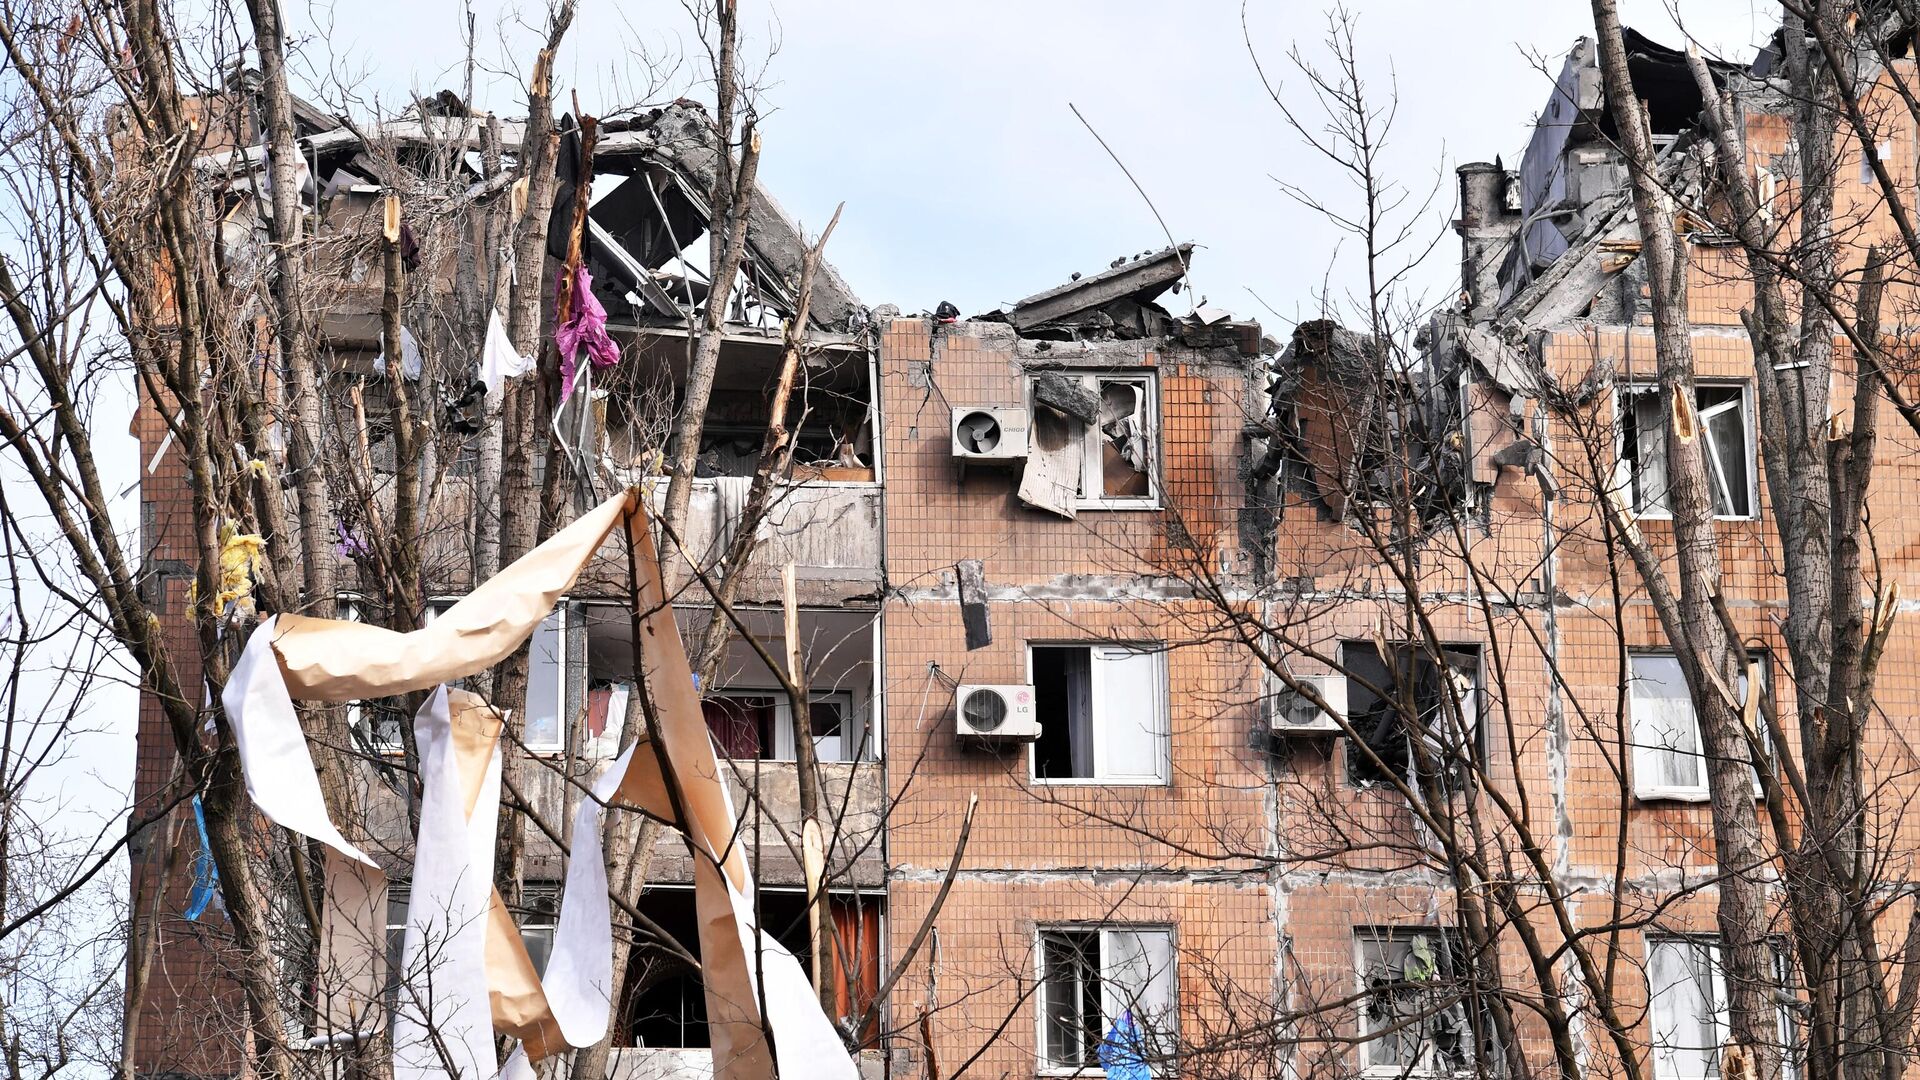 Жилой дом на улице Пинтера в Донецке, пострадавший в результате обрушения крыши после обстрела украинскими войсками - РИА Новости, 1920, 01.05.2022